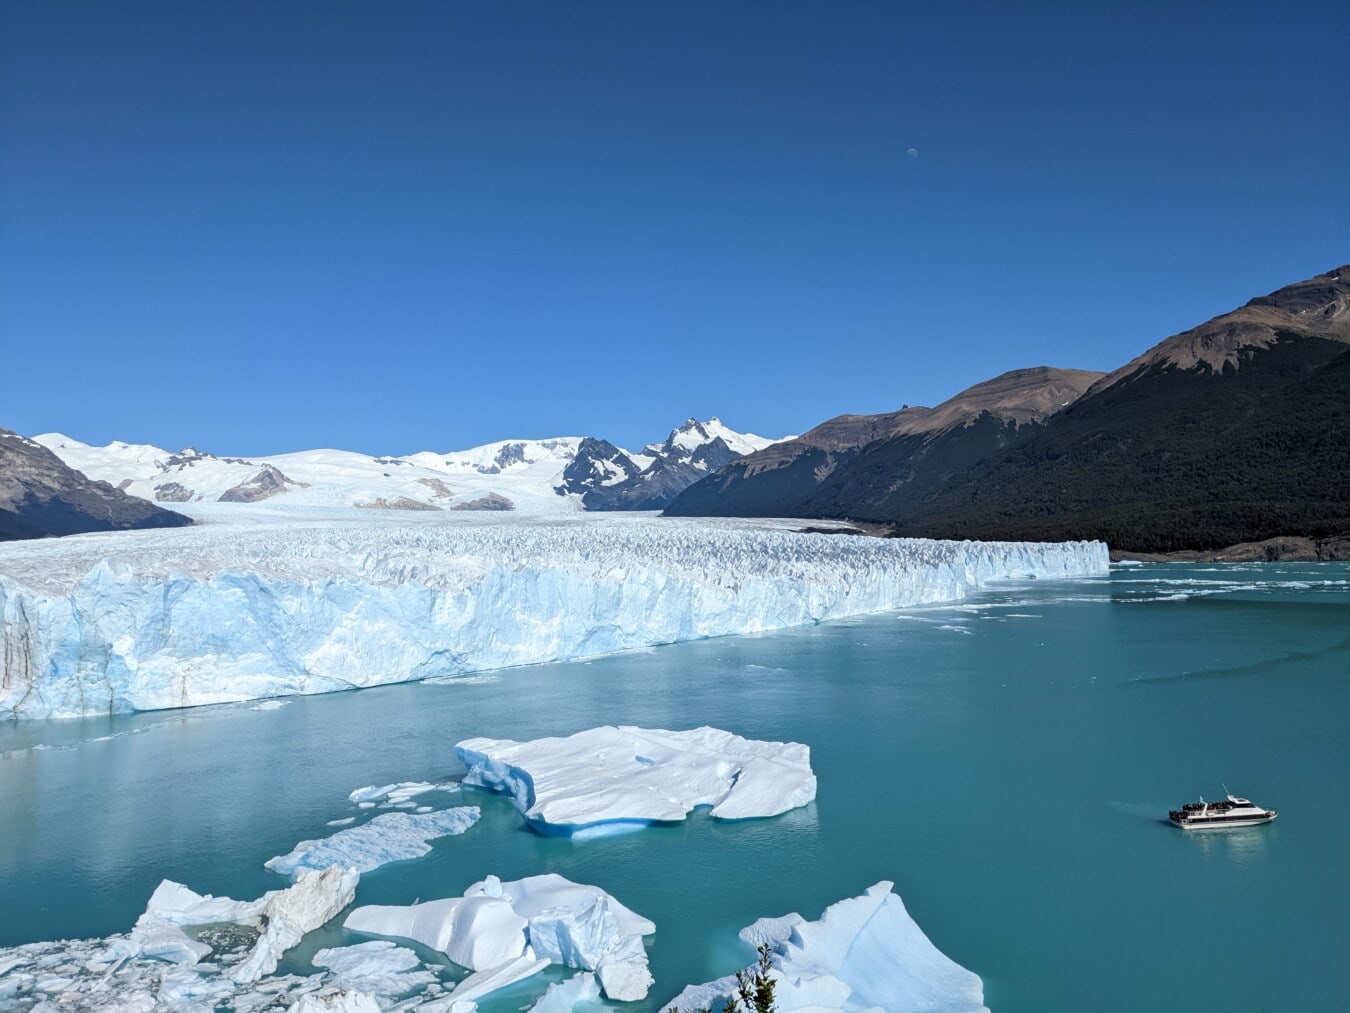 Tourismus, Gletscher, Kreuzfahrtschiff, Eisberg, nördlichen Hemisphäre, Klima, Schnee, Wasser, Eis, Berge